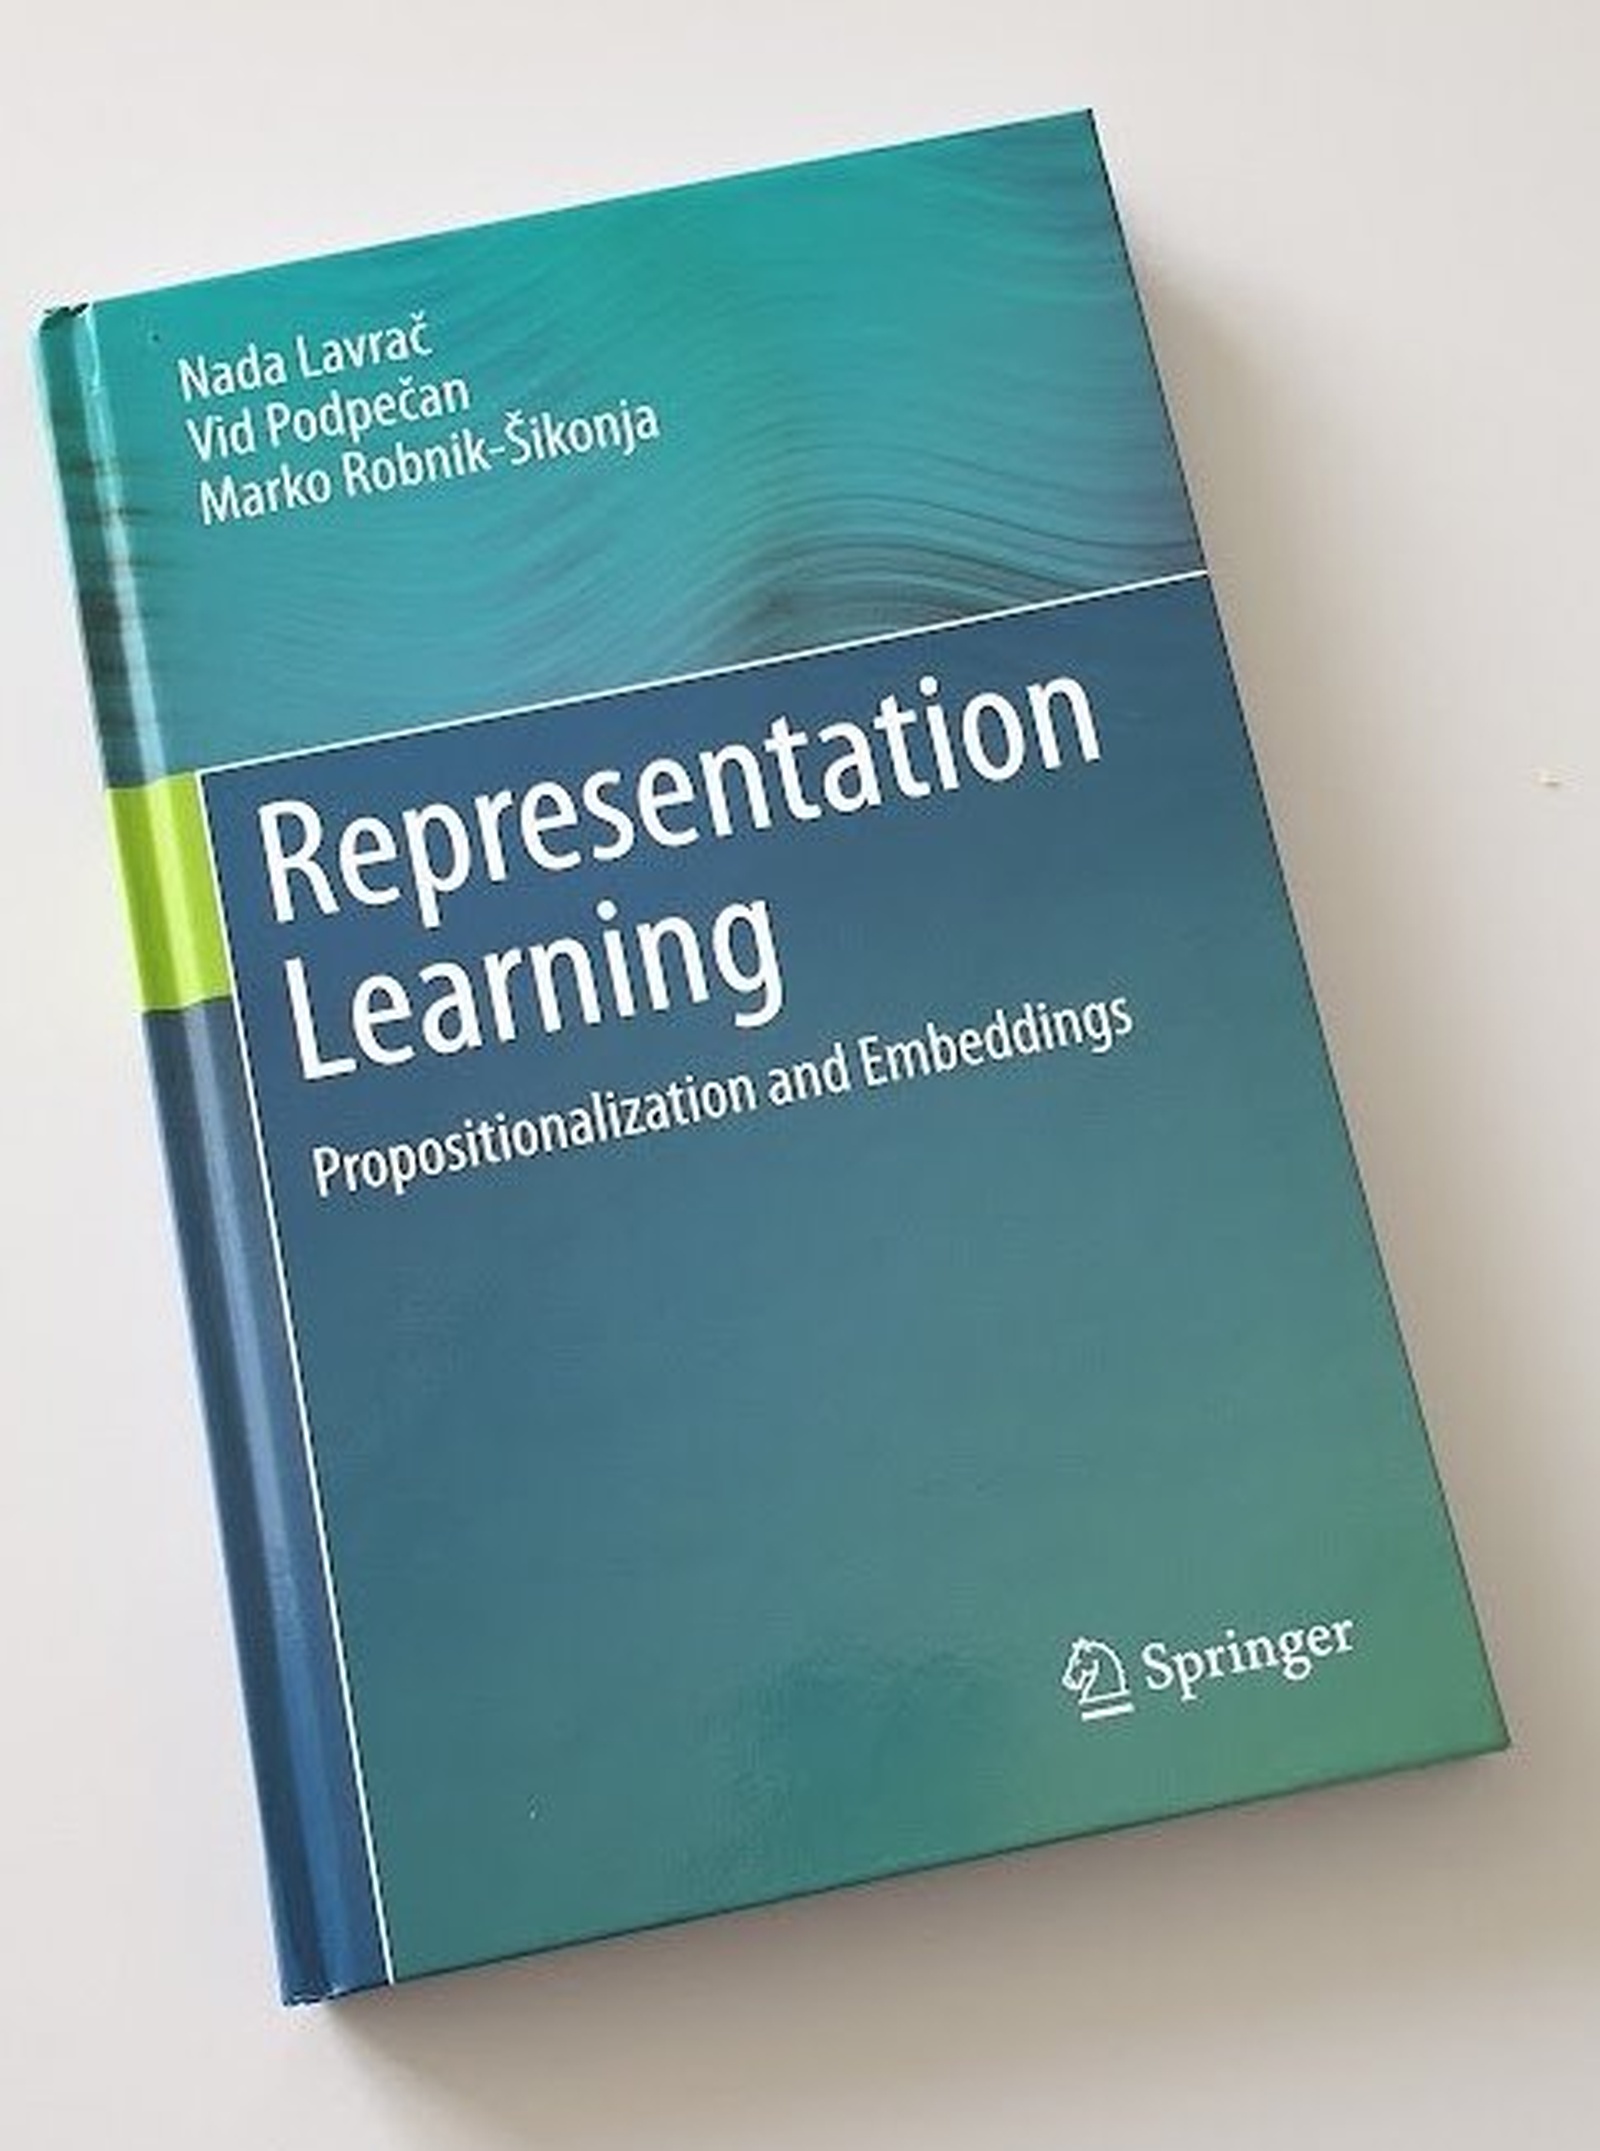 Pri založbi Springer izšla monografija o učenju podatkovnih predstavitev